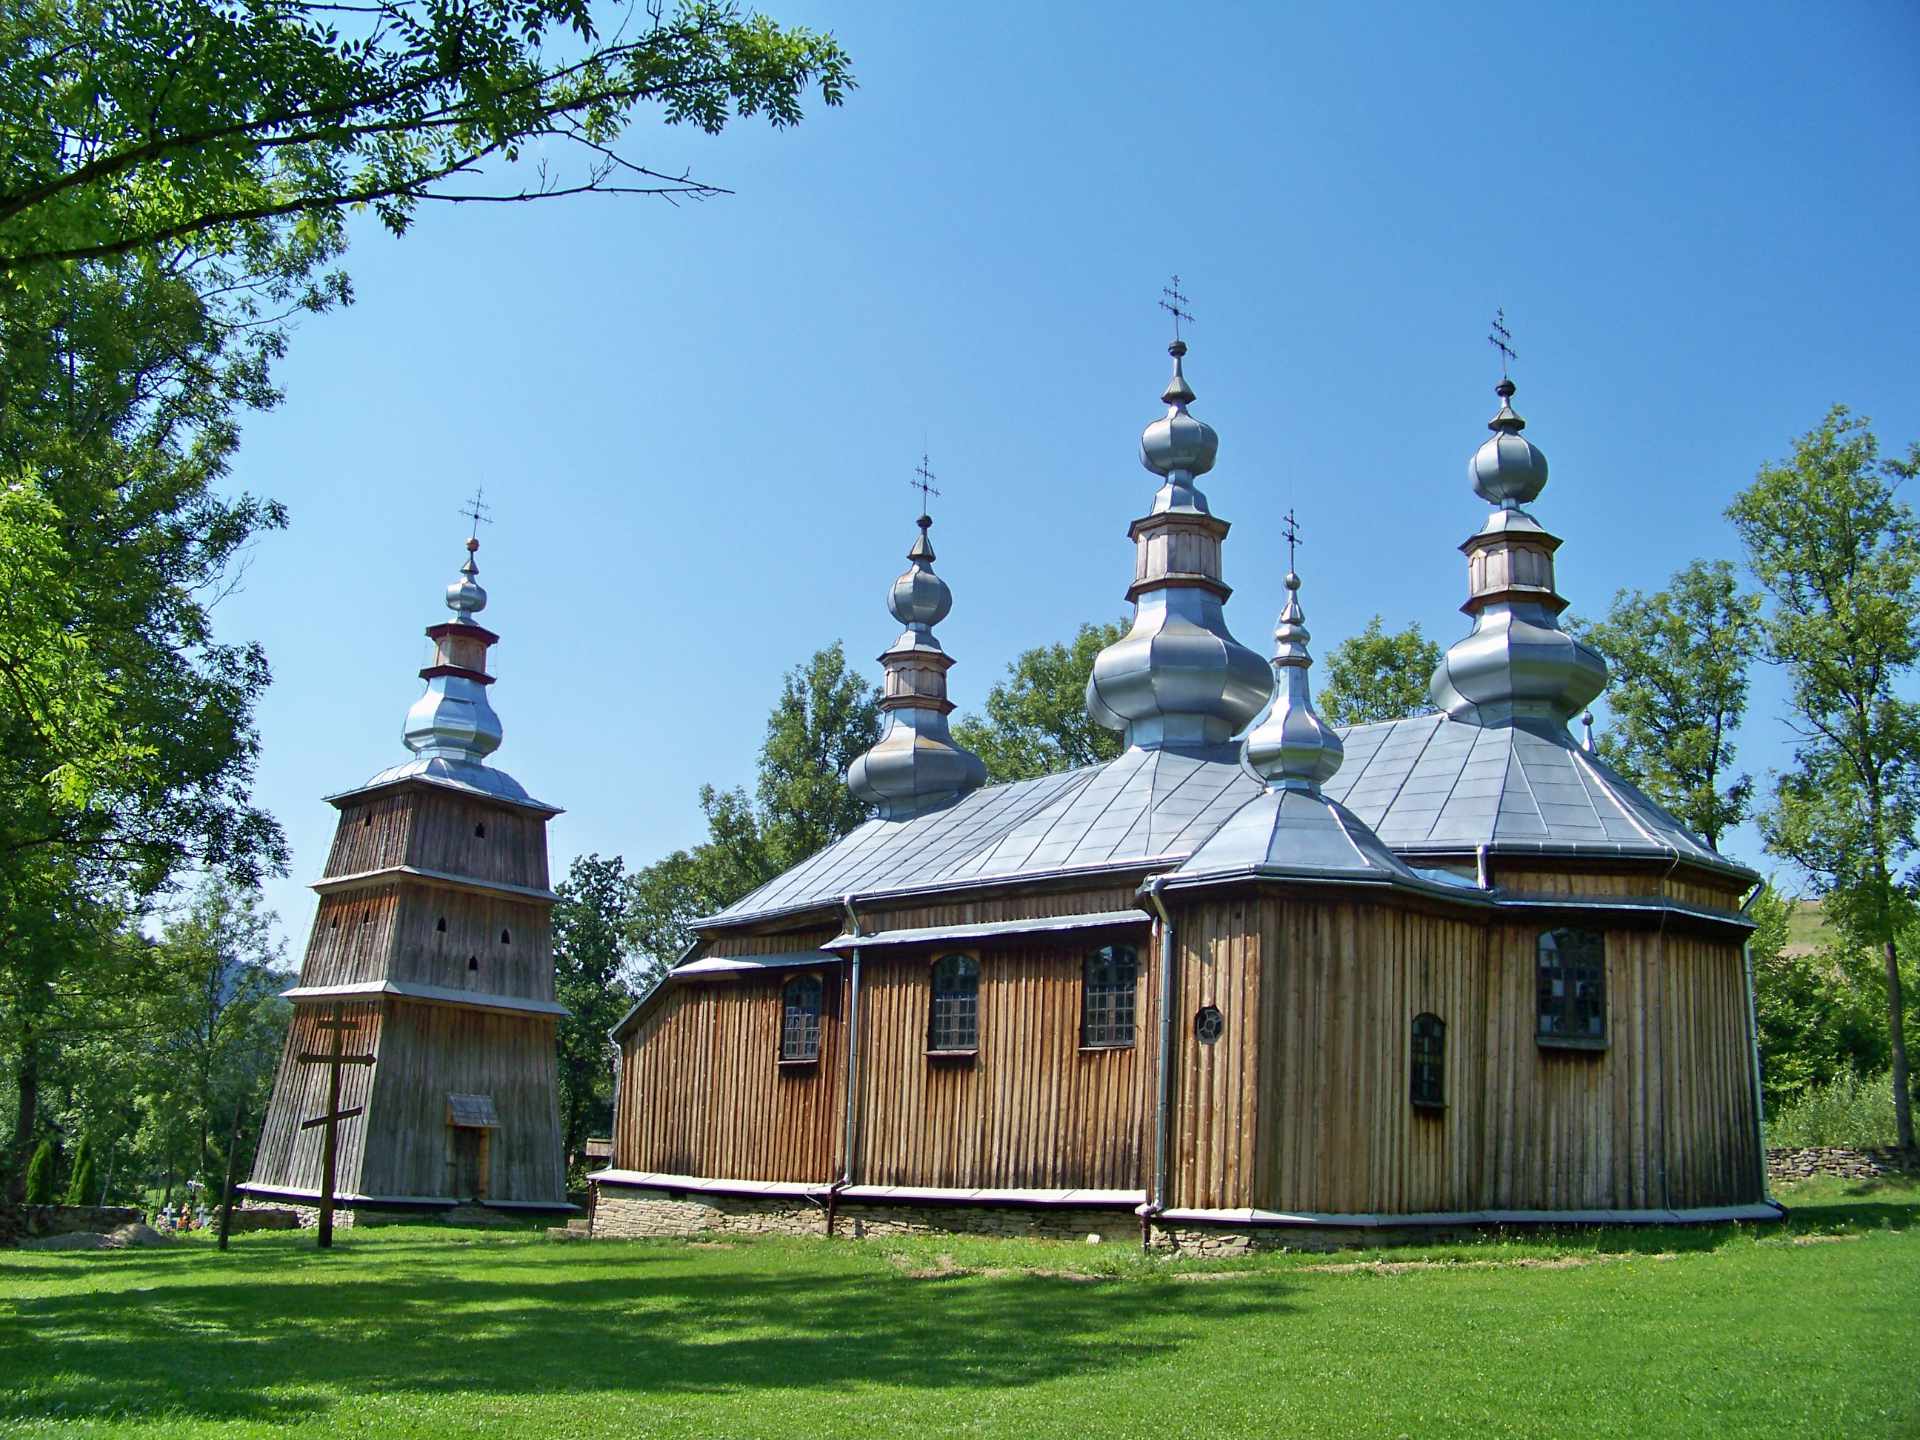 Zu sehen ist eine Holzkirche in Turzańsk, Bild: Verid1st